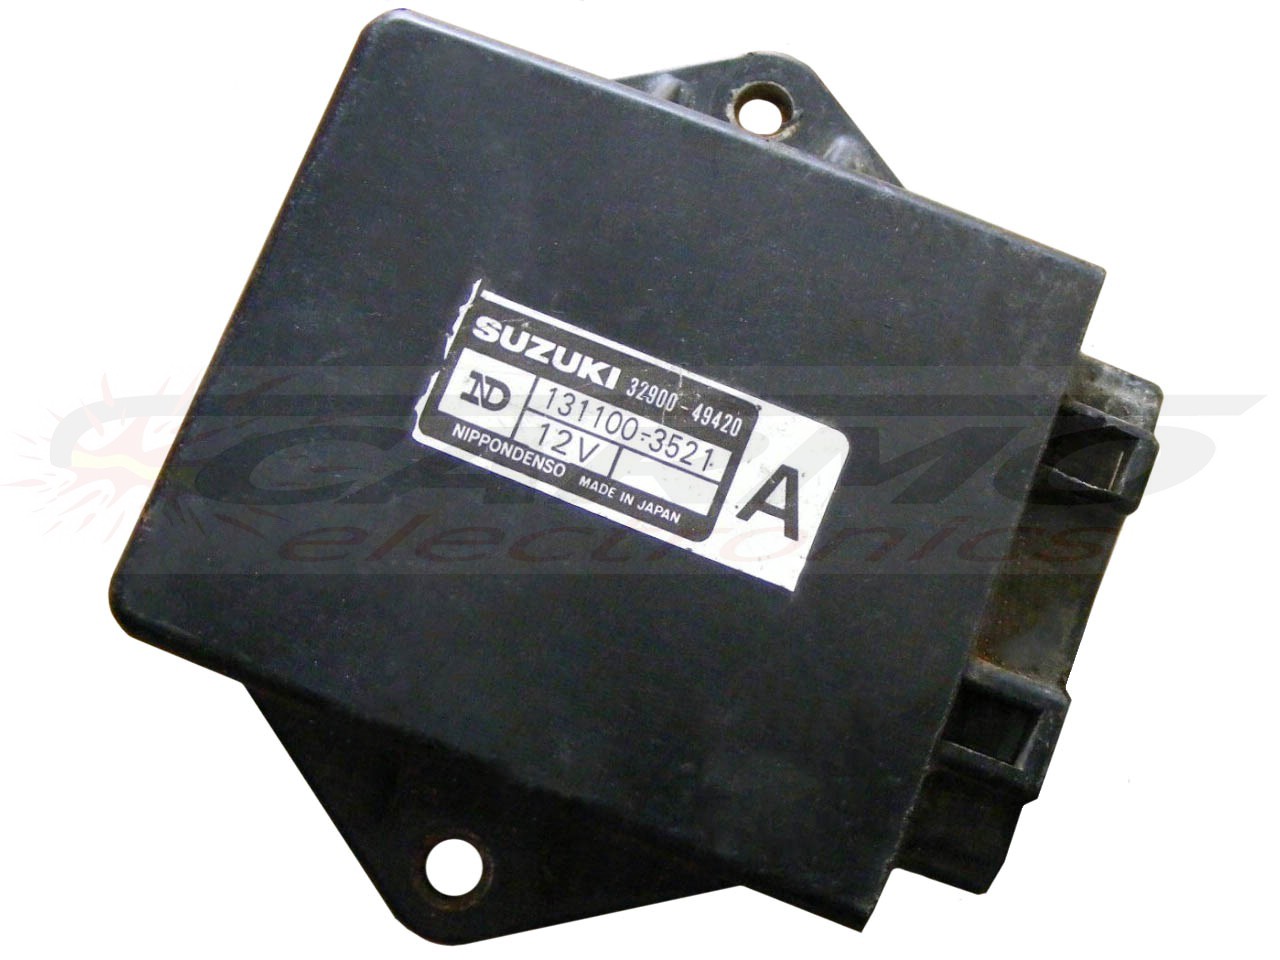 GSXR1100 CDI ignition (131100-3521)